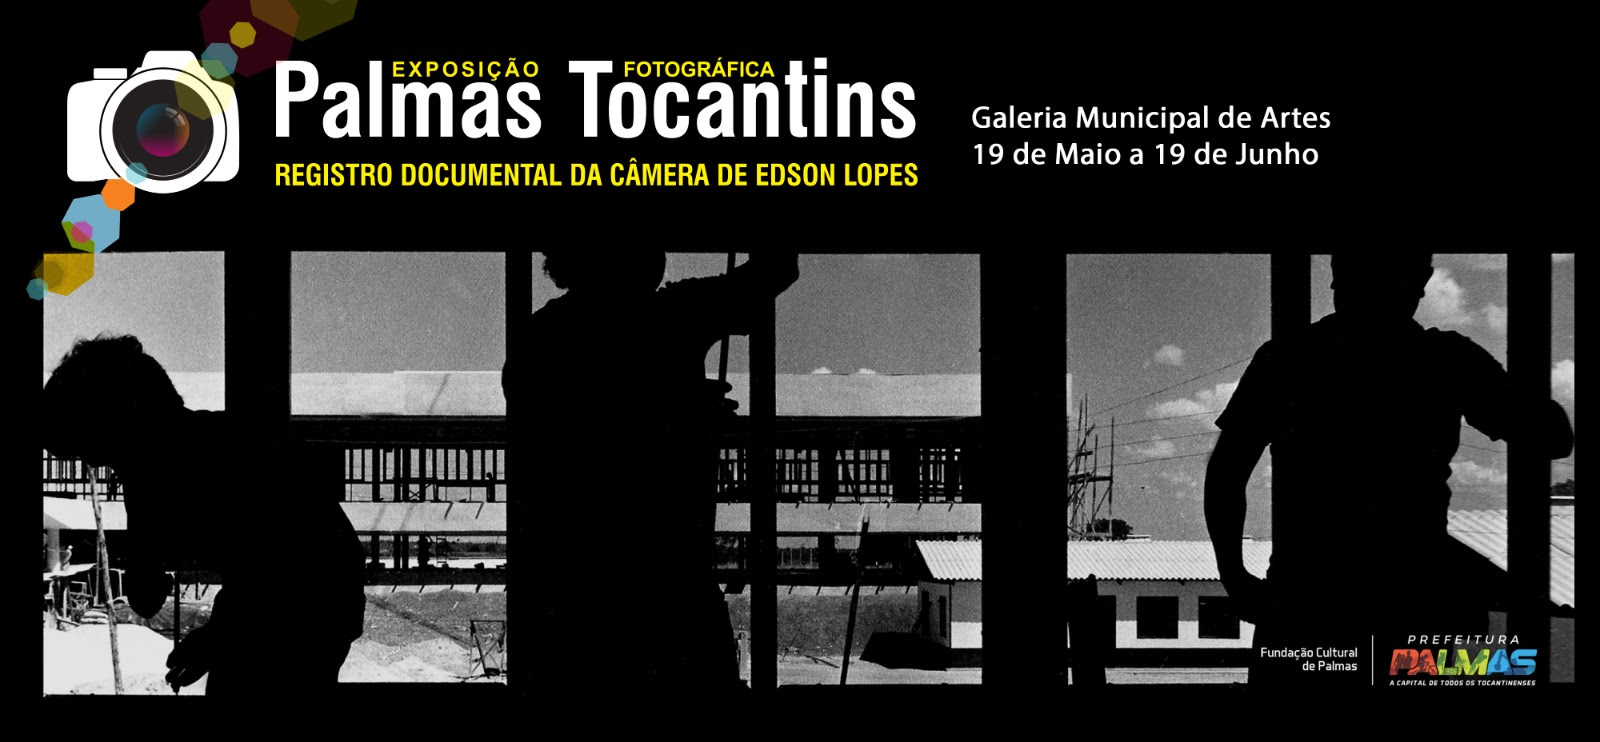 Exposição ‘Palmas Tocantins’ resgata registros de Edson Lopes em exibição no Espaço Cultural